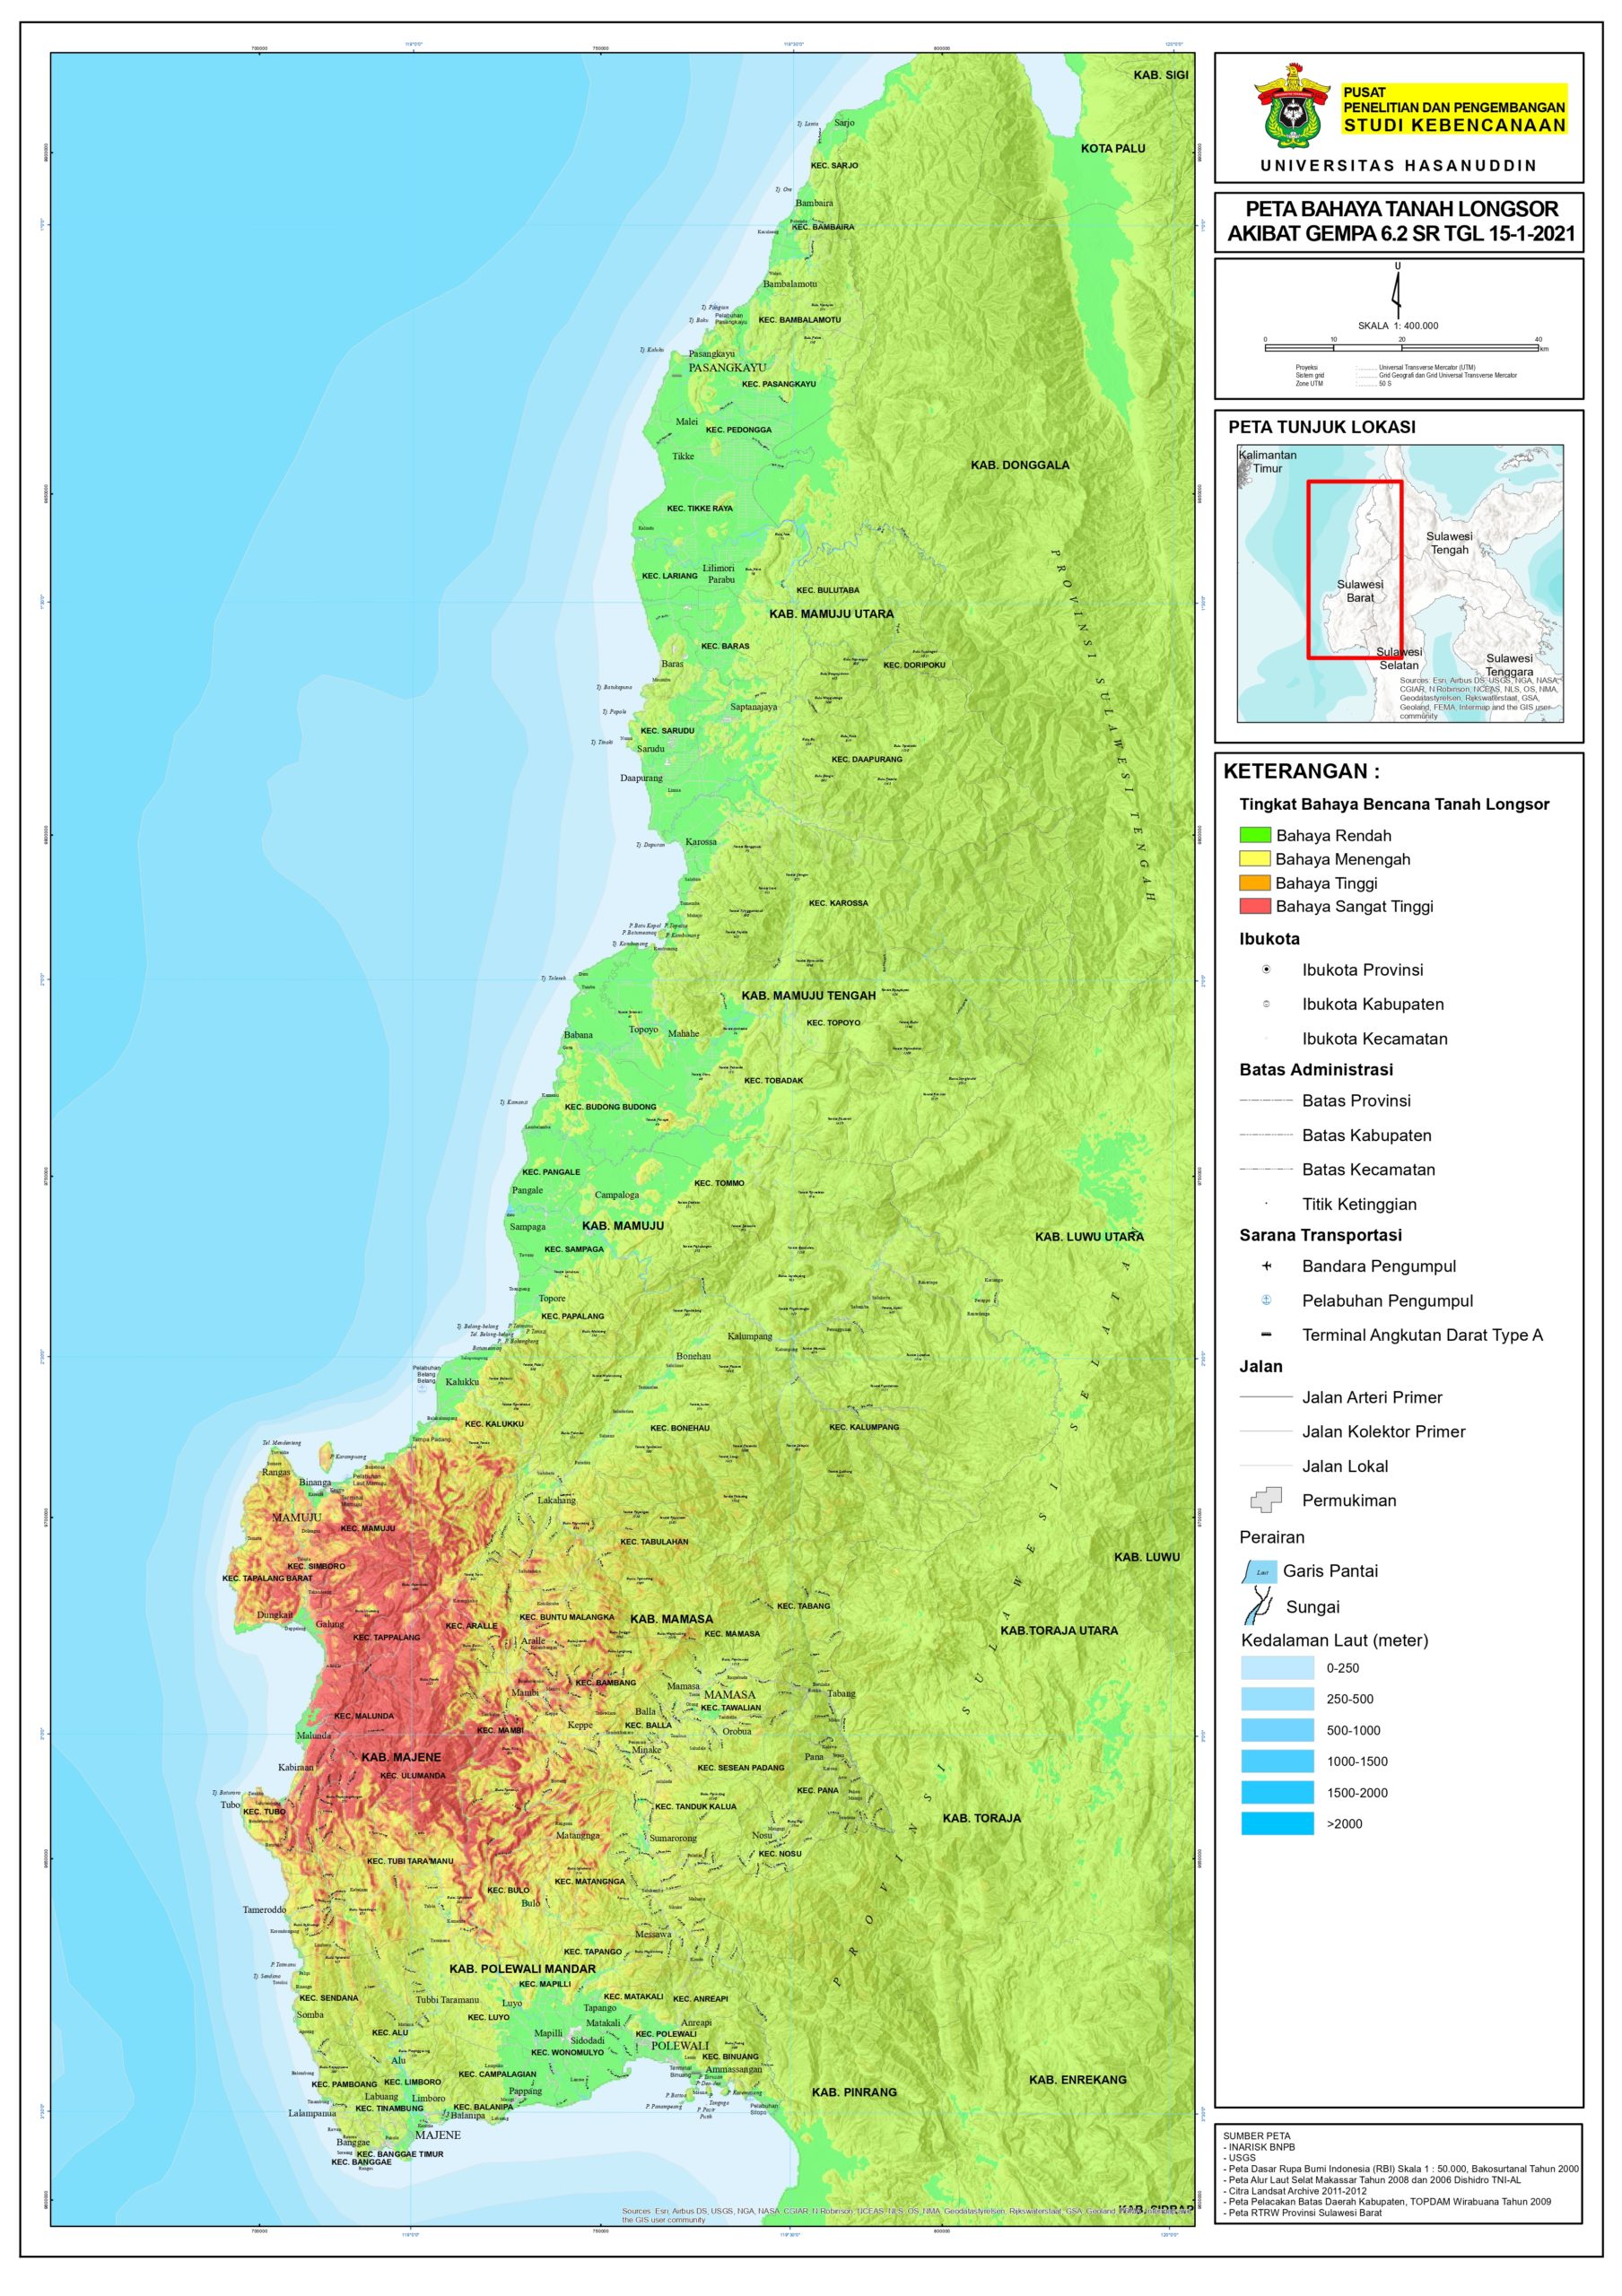 Peta Rawan Tanah Longsor Pasca Gempa Bumi 6.2 M di Prov. Sulawesi Barat